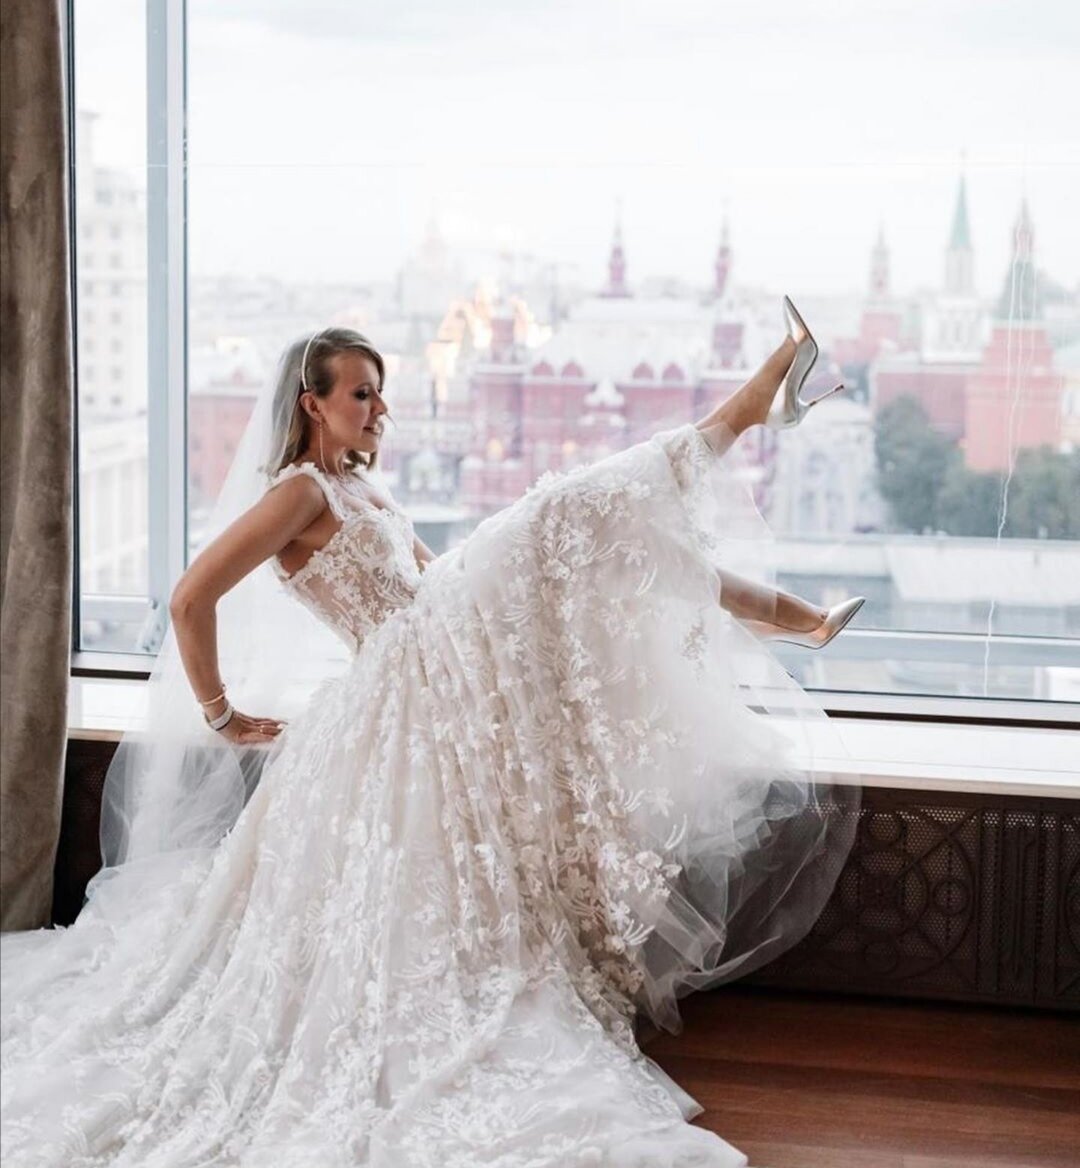 Ксения Собчак свадьба с Богомоловым